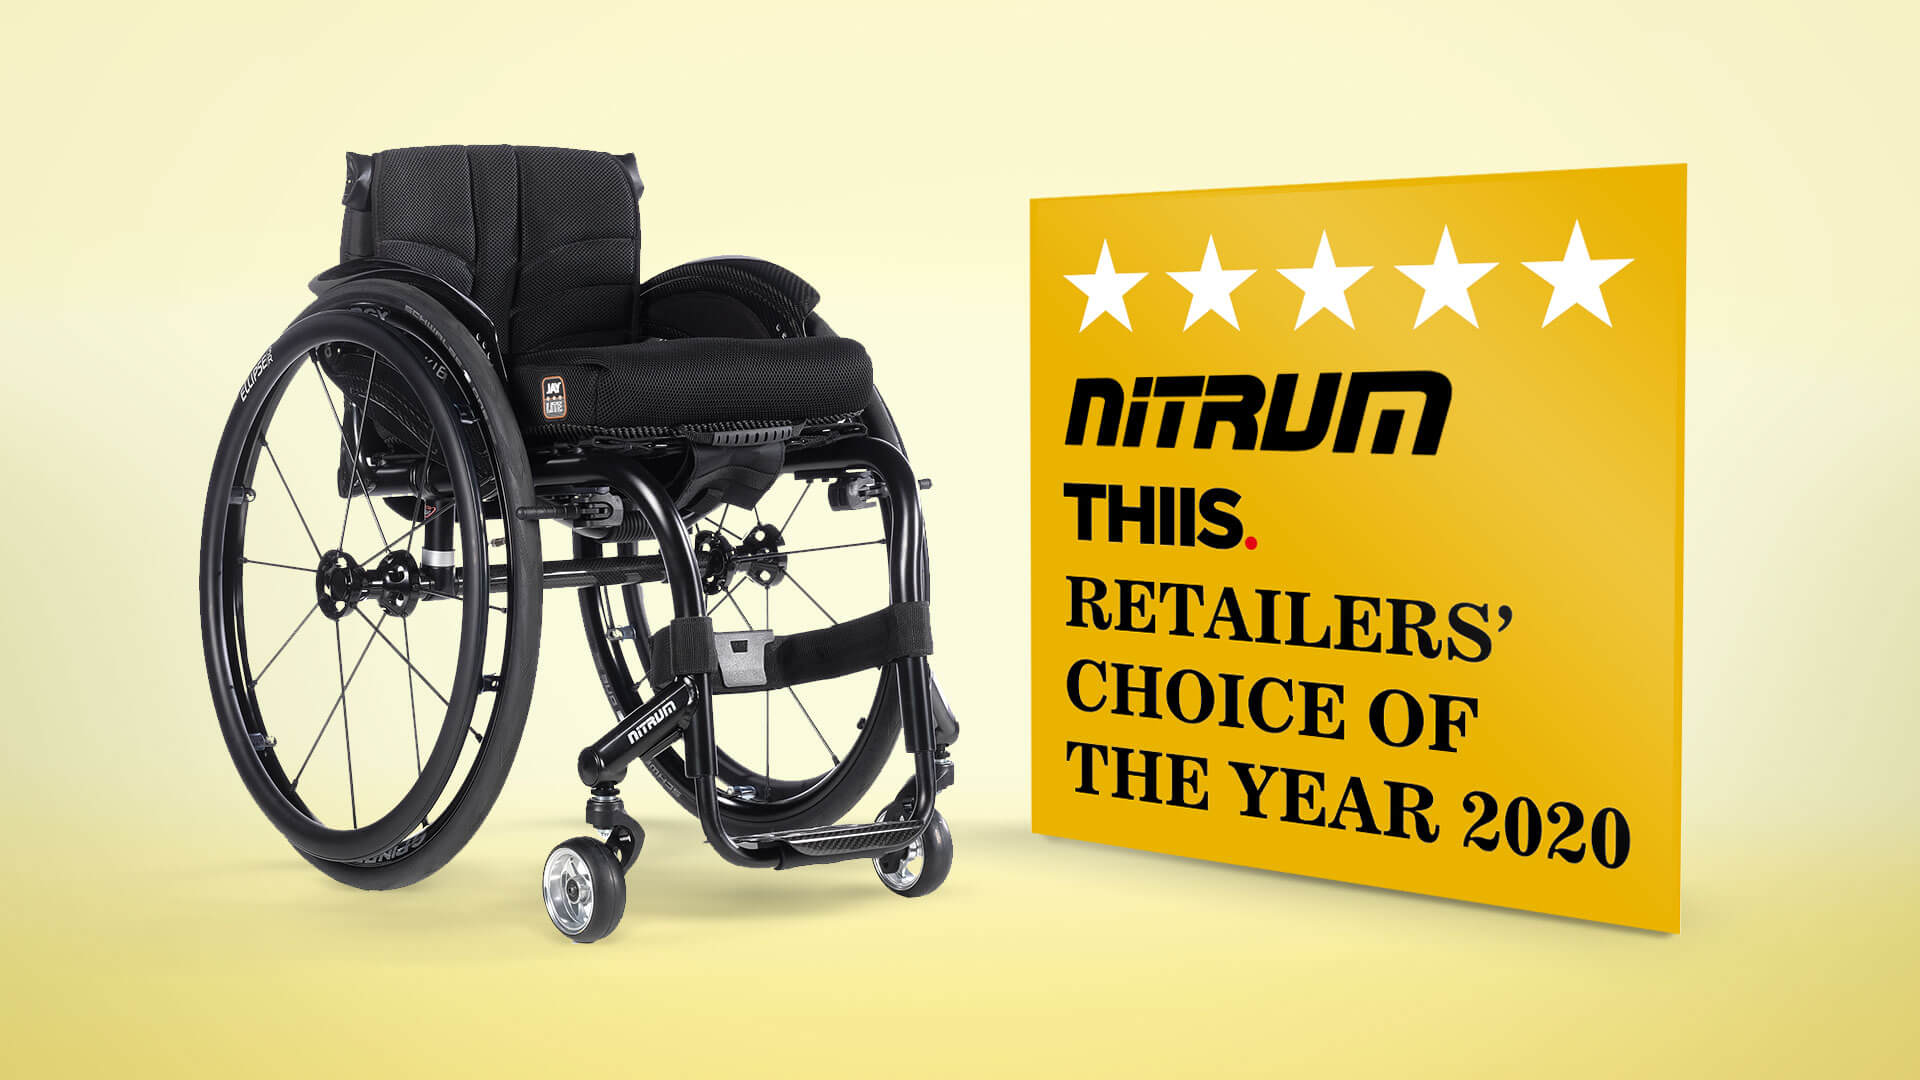 Nitrum vince il premio Retailer's Choice of the Year 2020 nel Regno Unito!